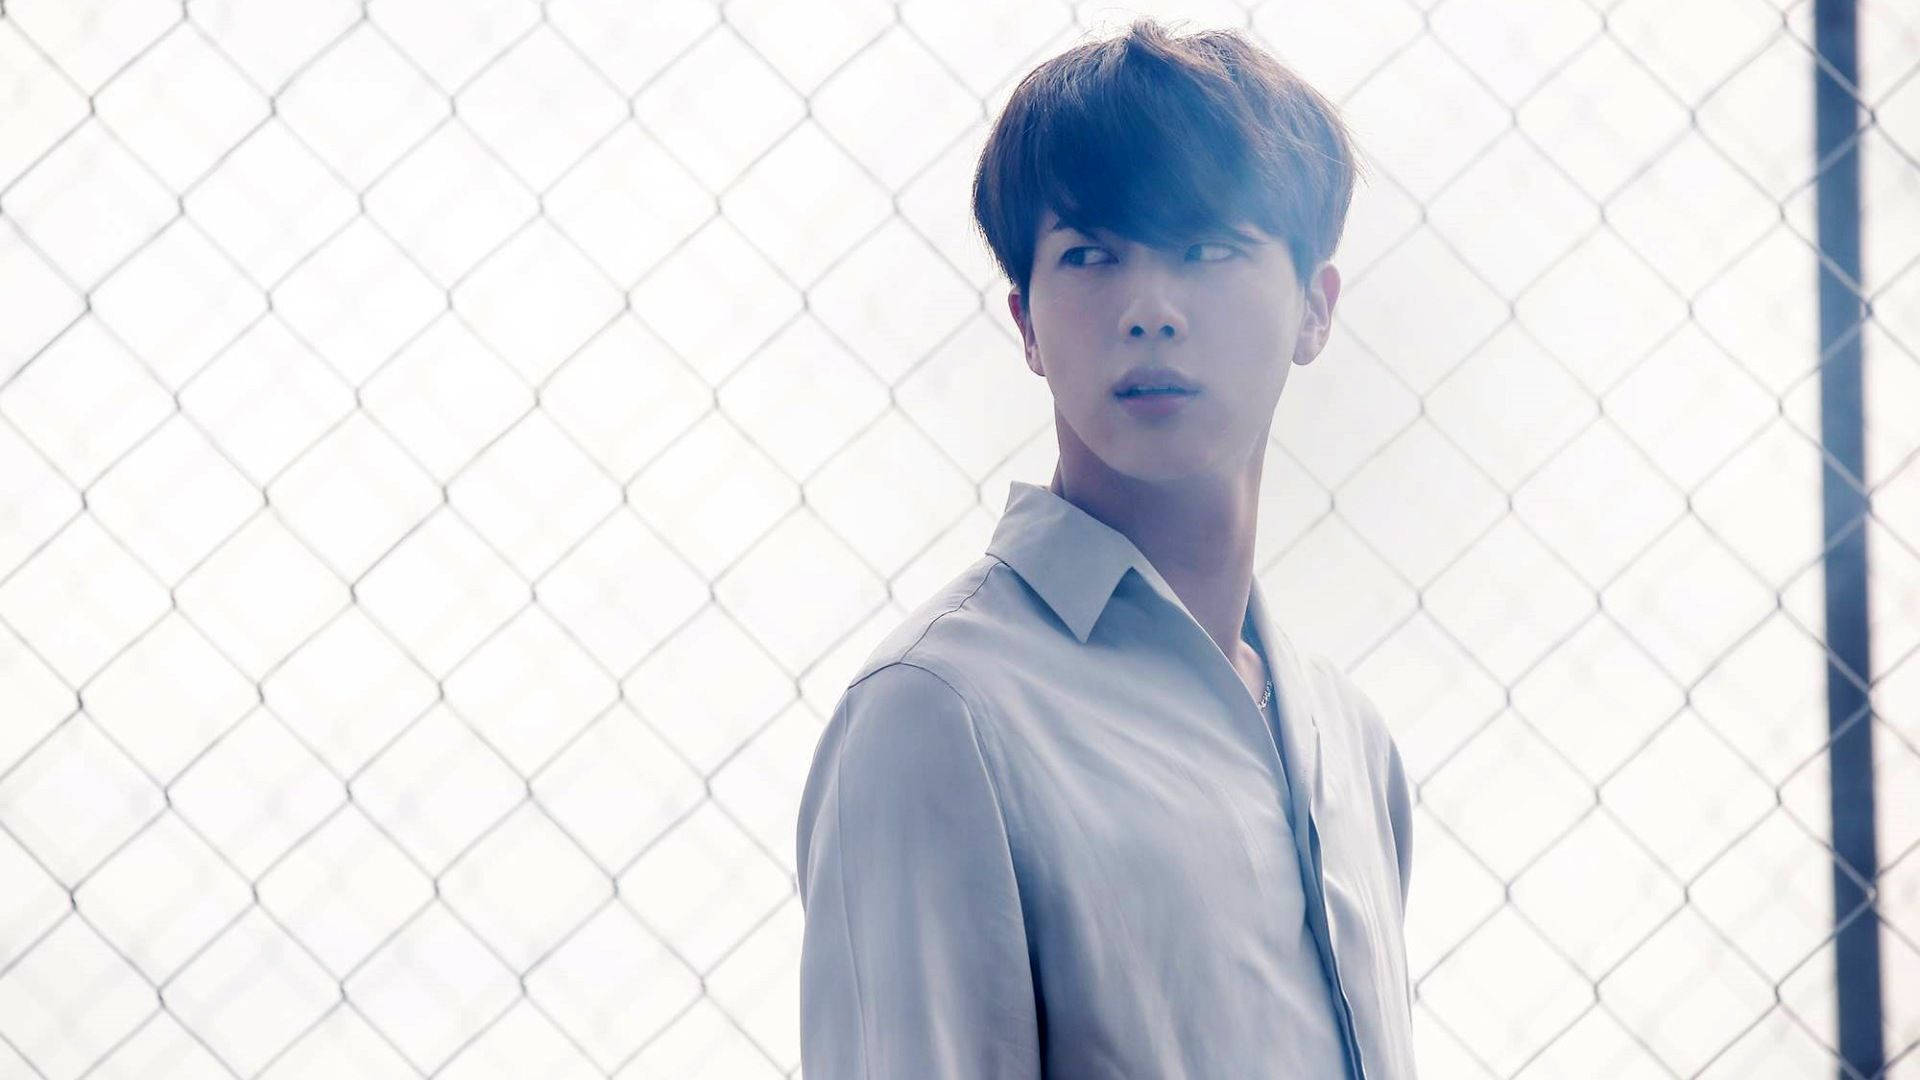 Download Kim Seok Jin In White Shirt Wallpaper